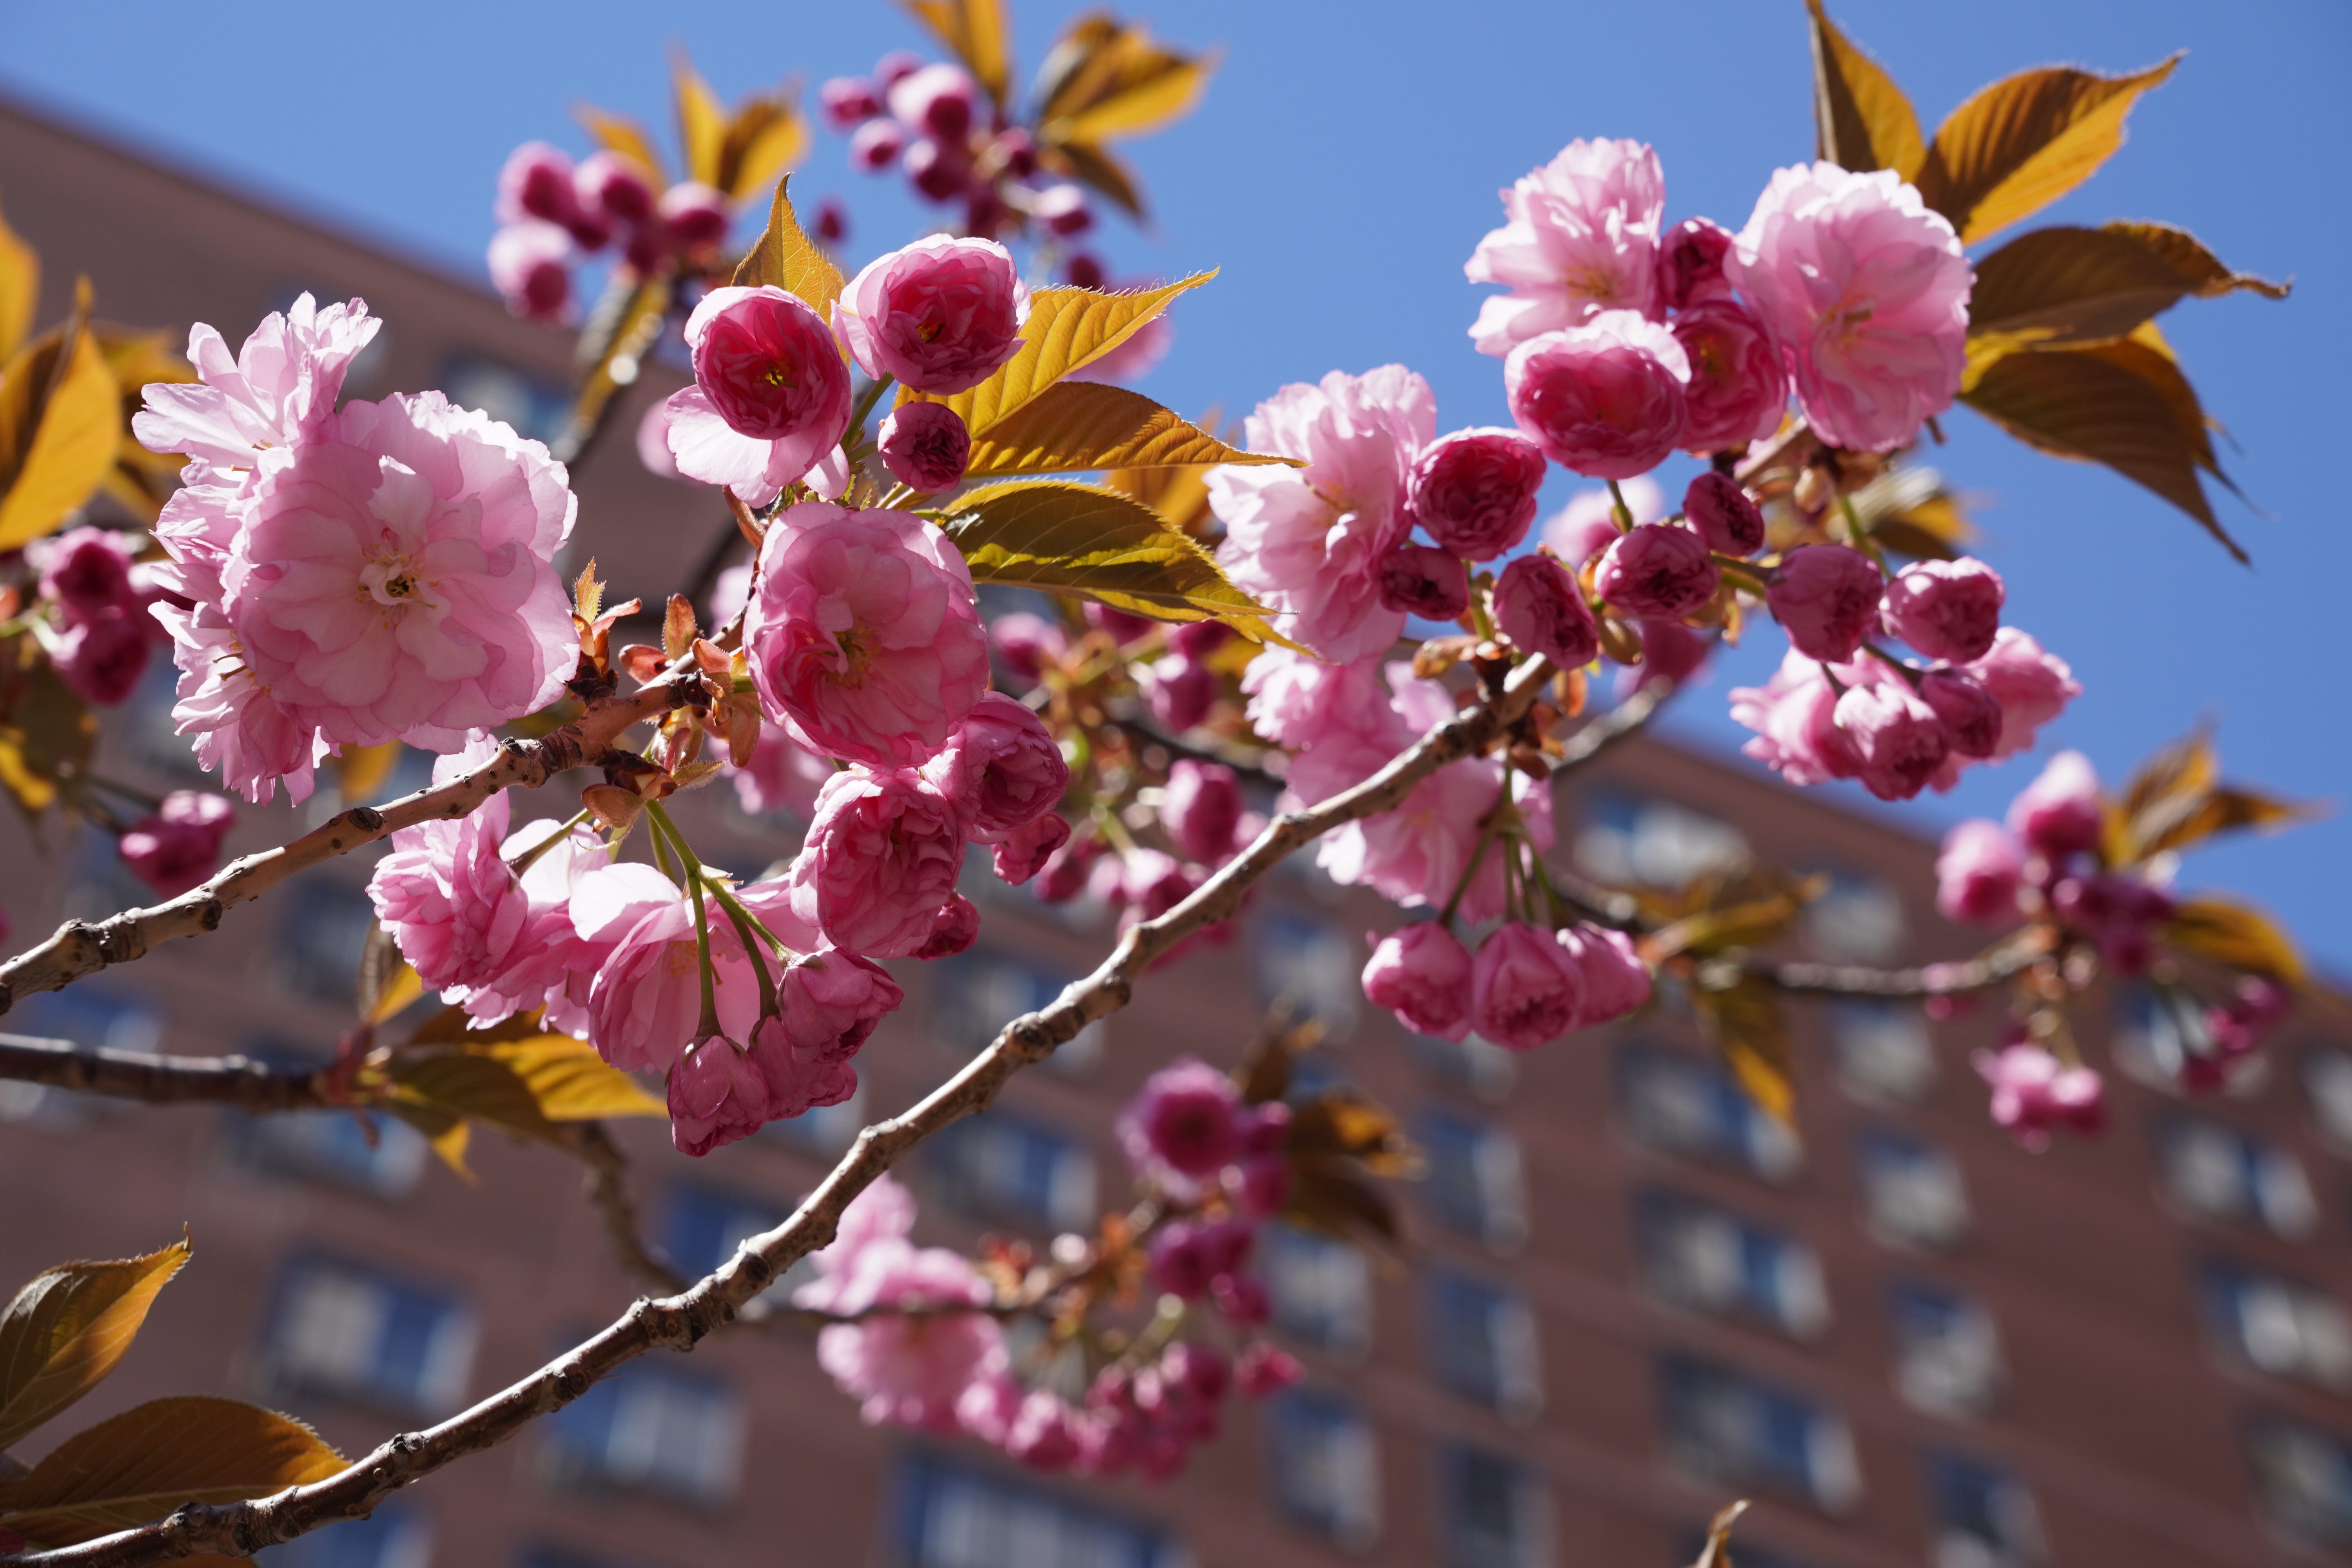 纽约华埠孔厦樱花季近尾声赏花得趁这两周| 曼哈顿| 大纪元